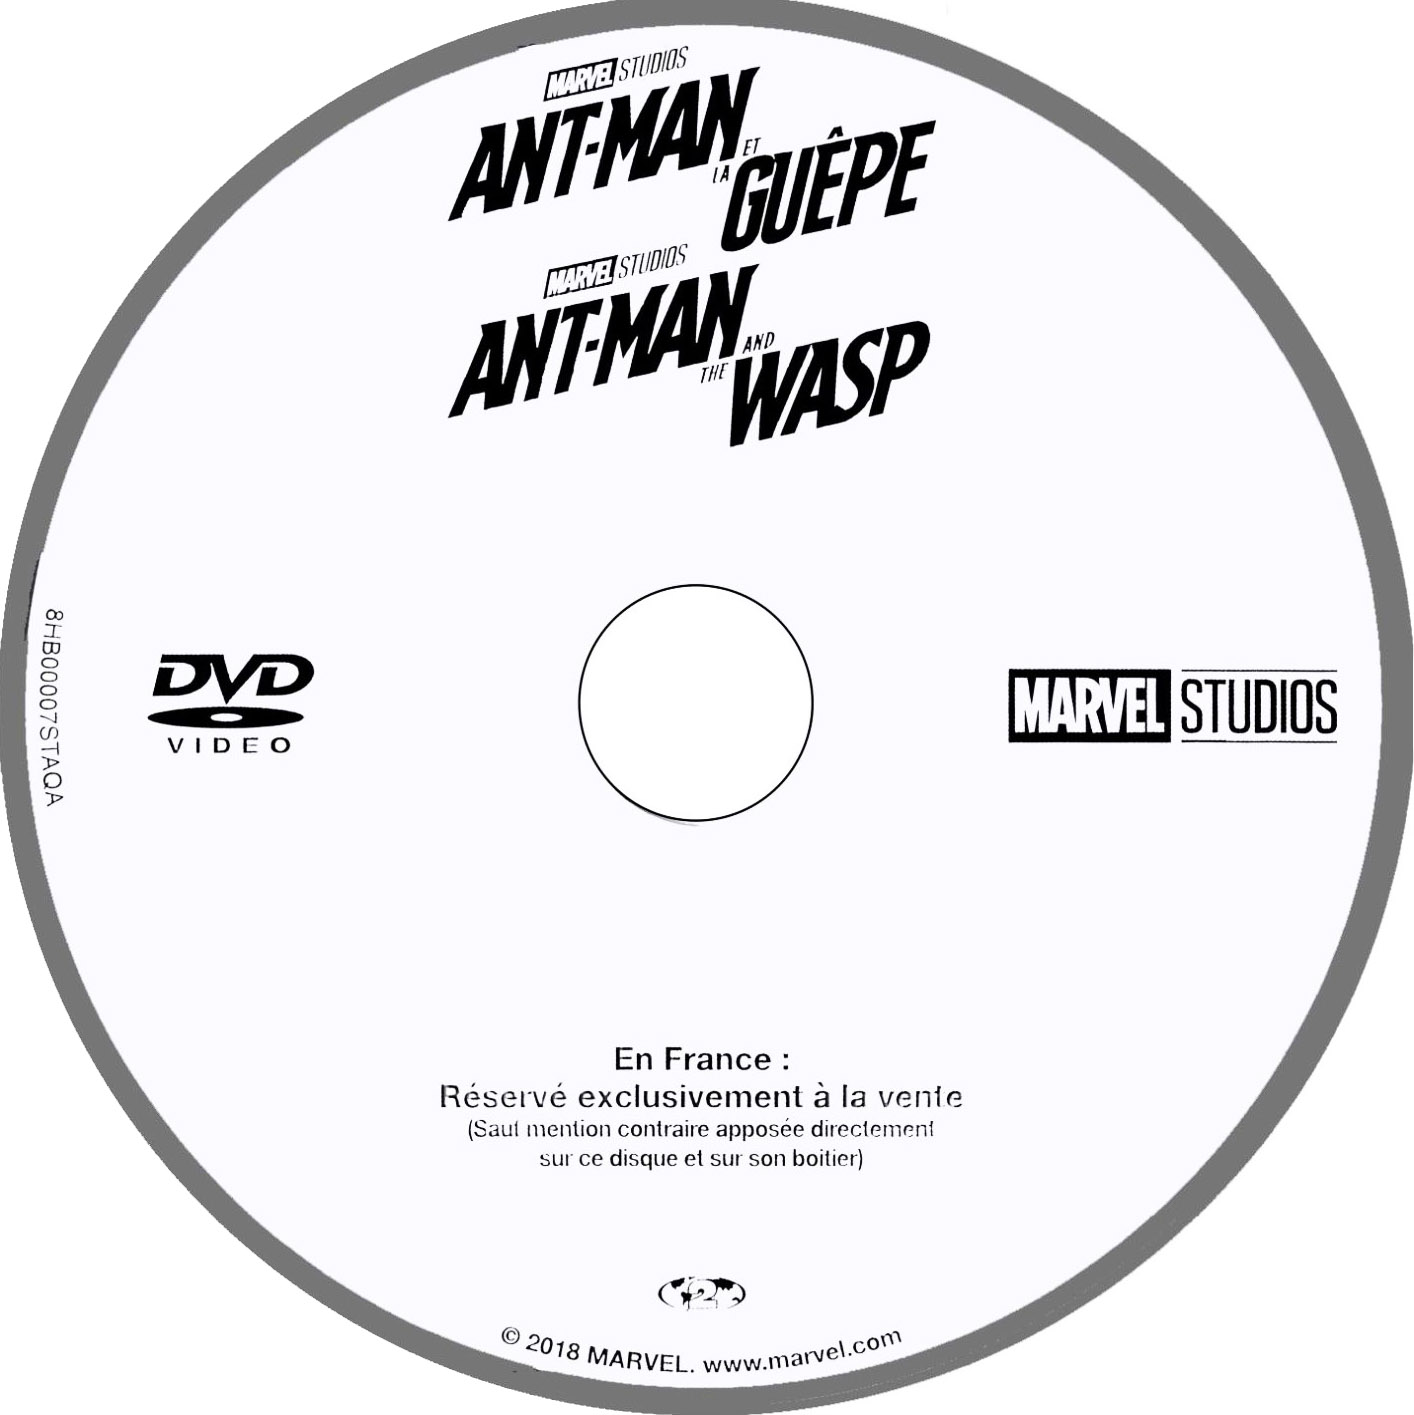 Ant-Man et la Guepe